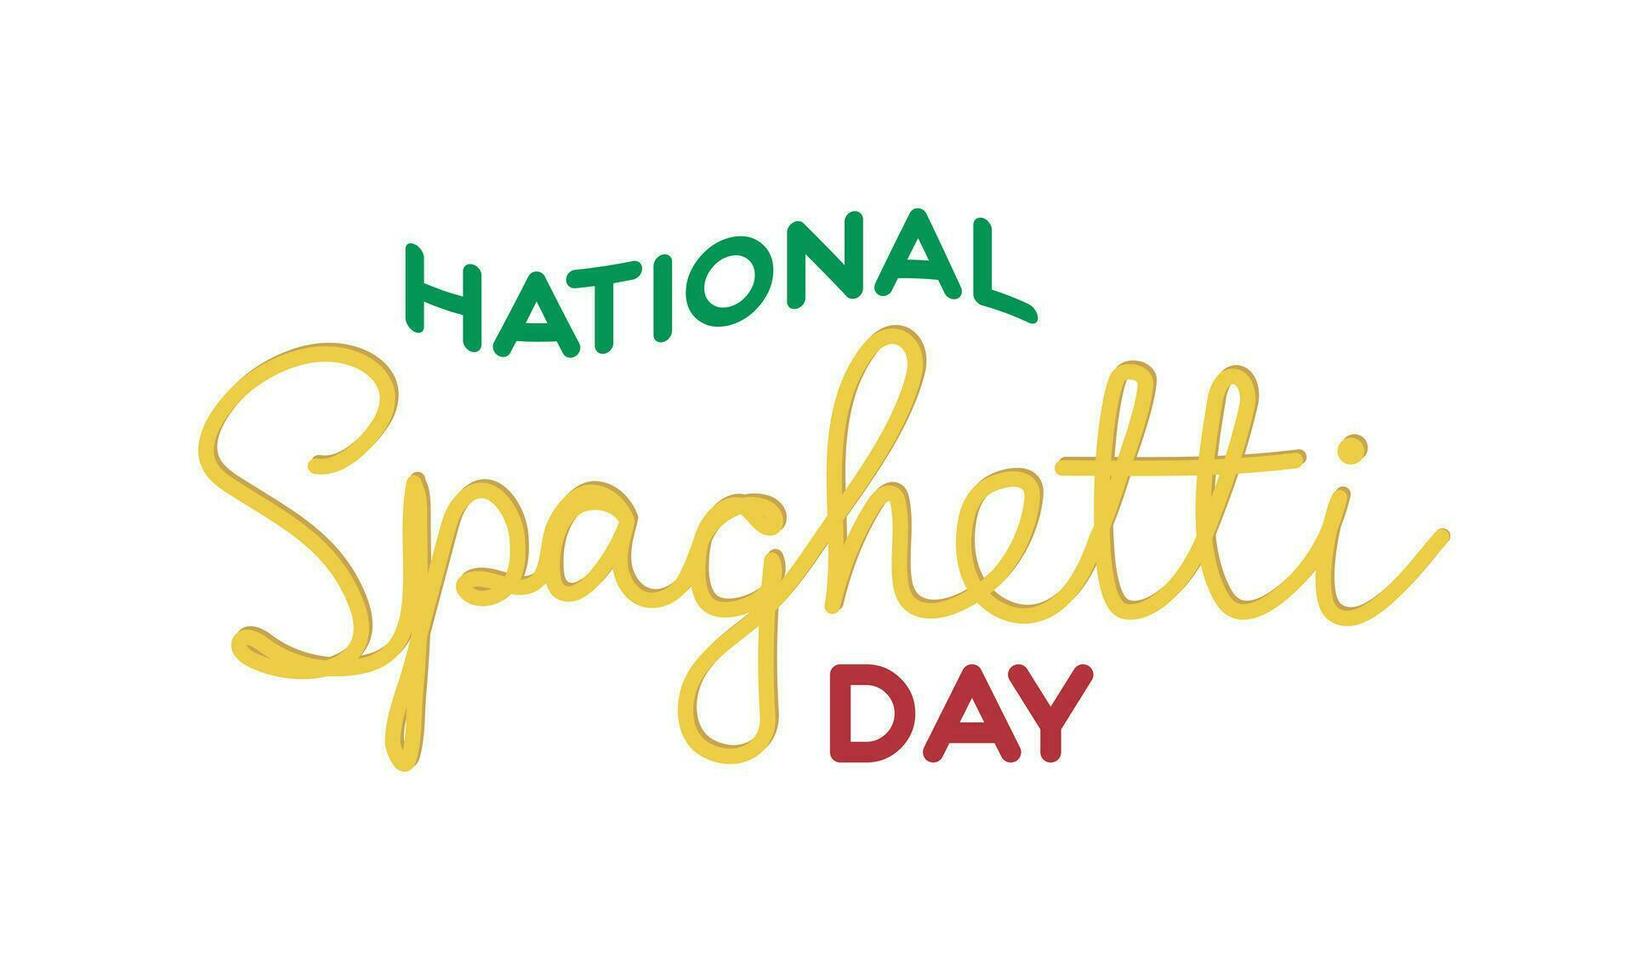 nationaal spaghetti dag tekst spandoek. handschrift tekst met spaghetti vector